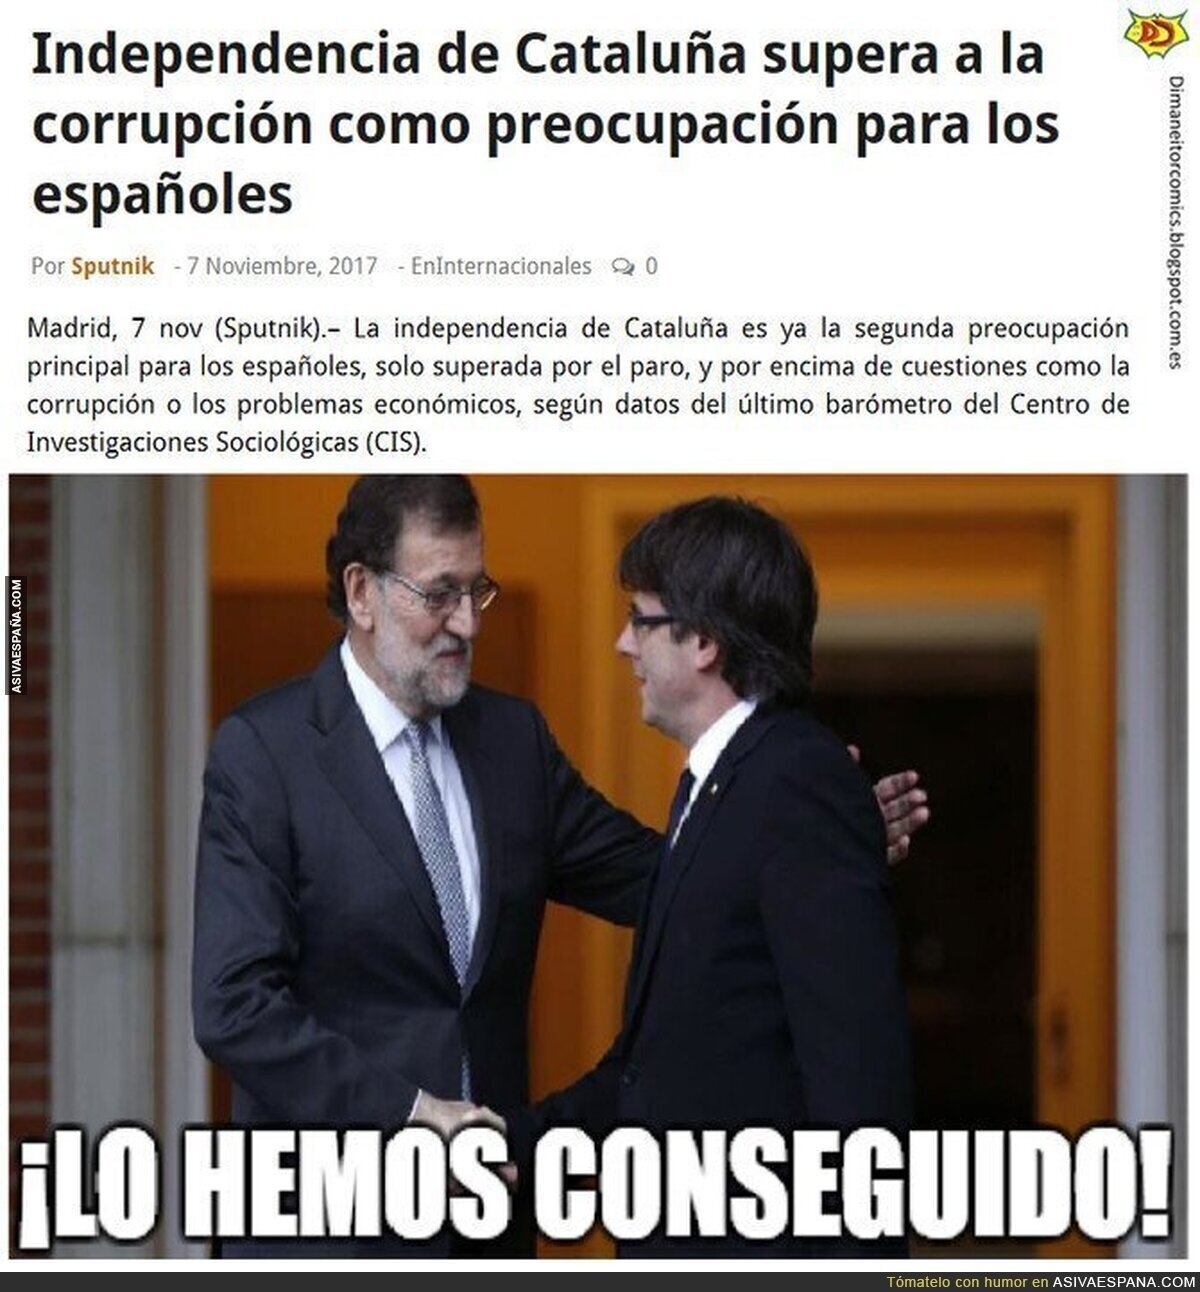 Rajoy y Puigdemont consiguen su objetivo